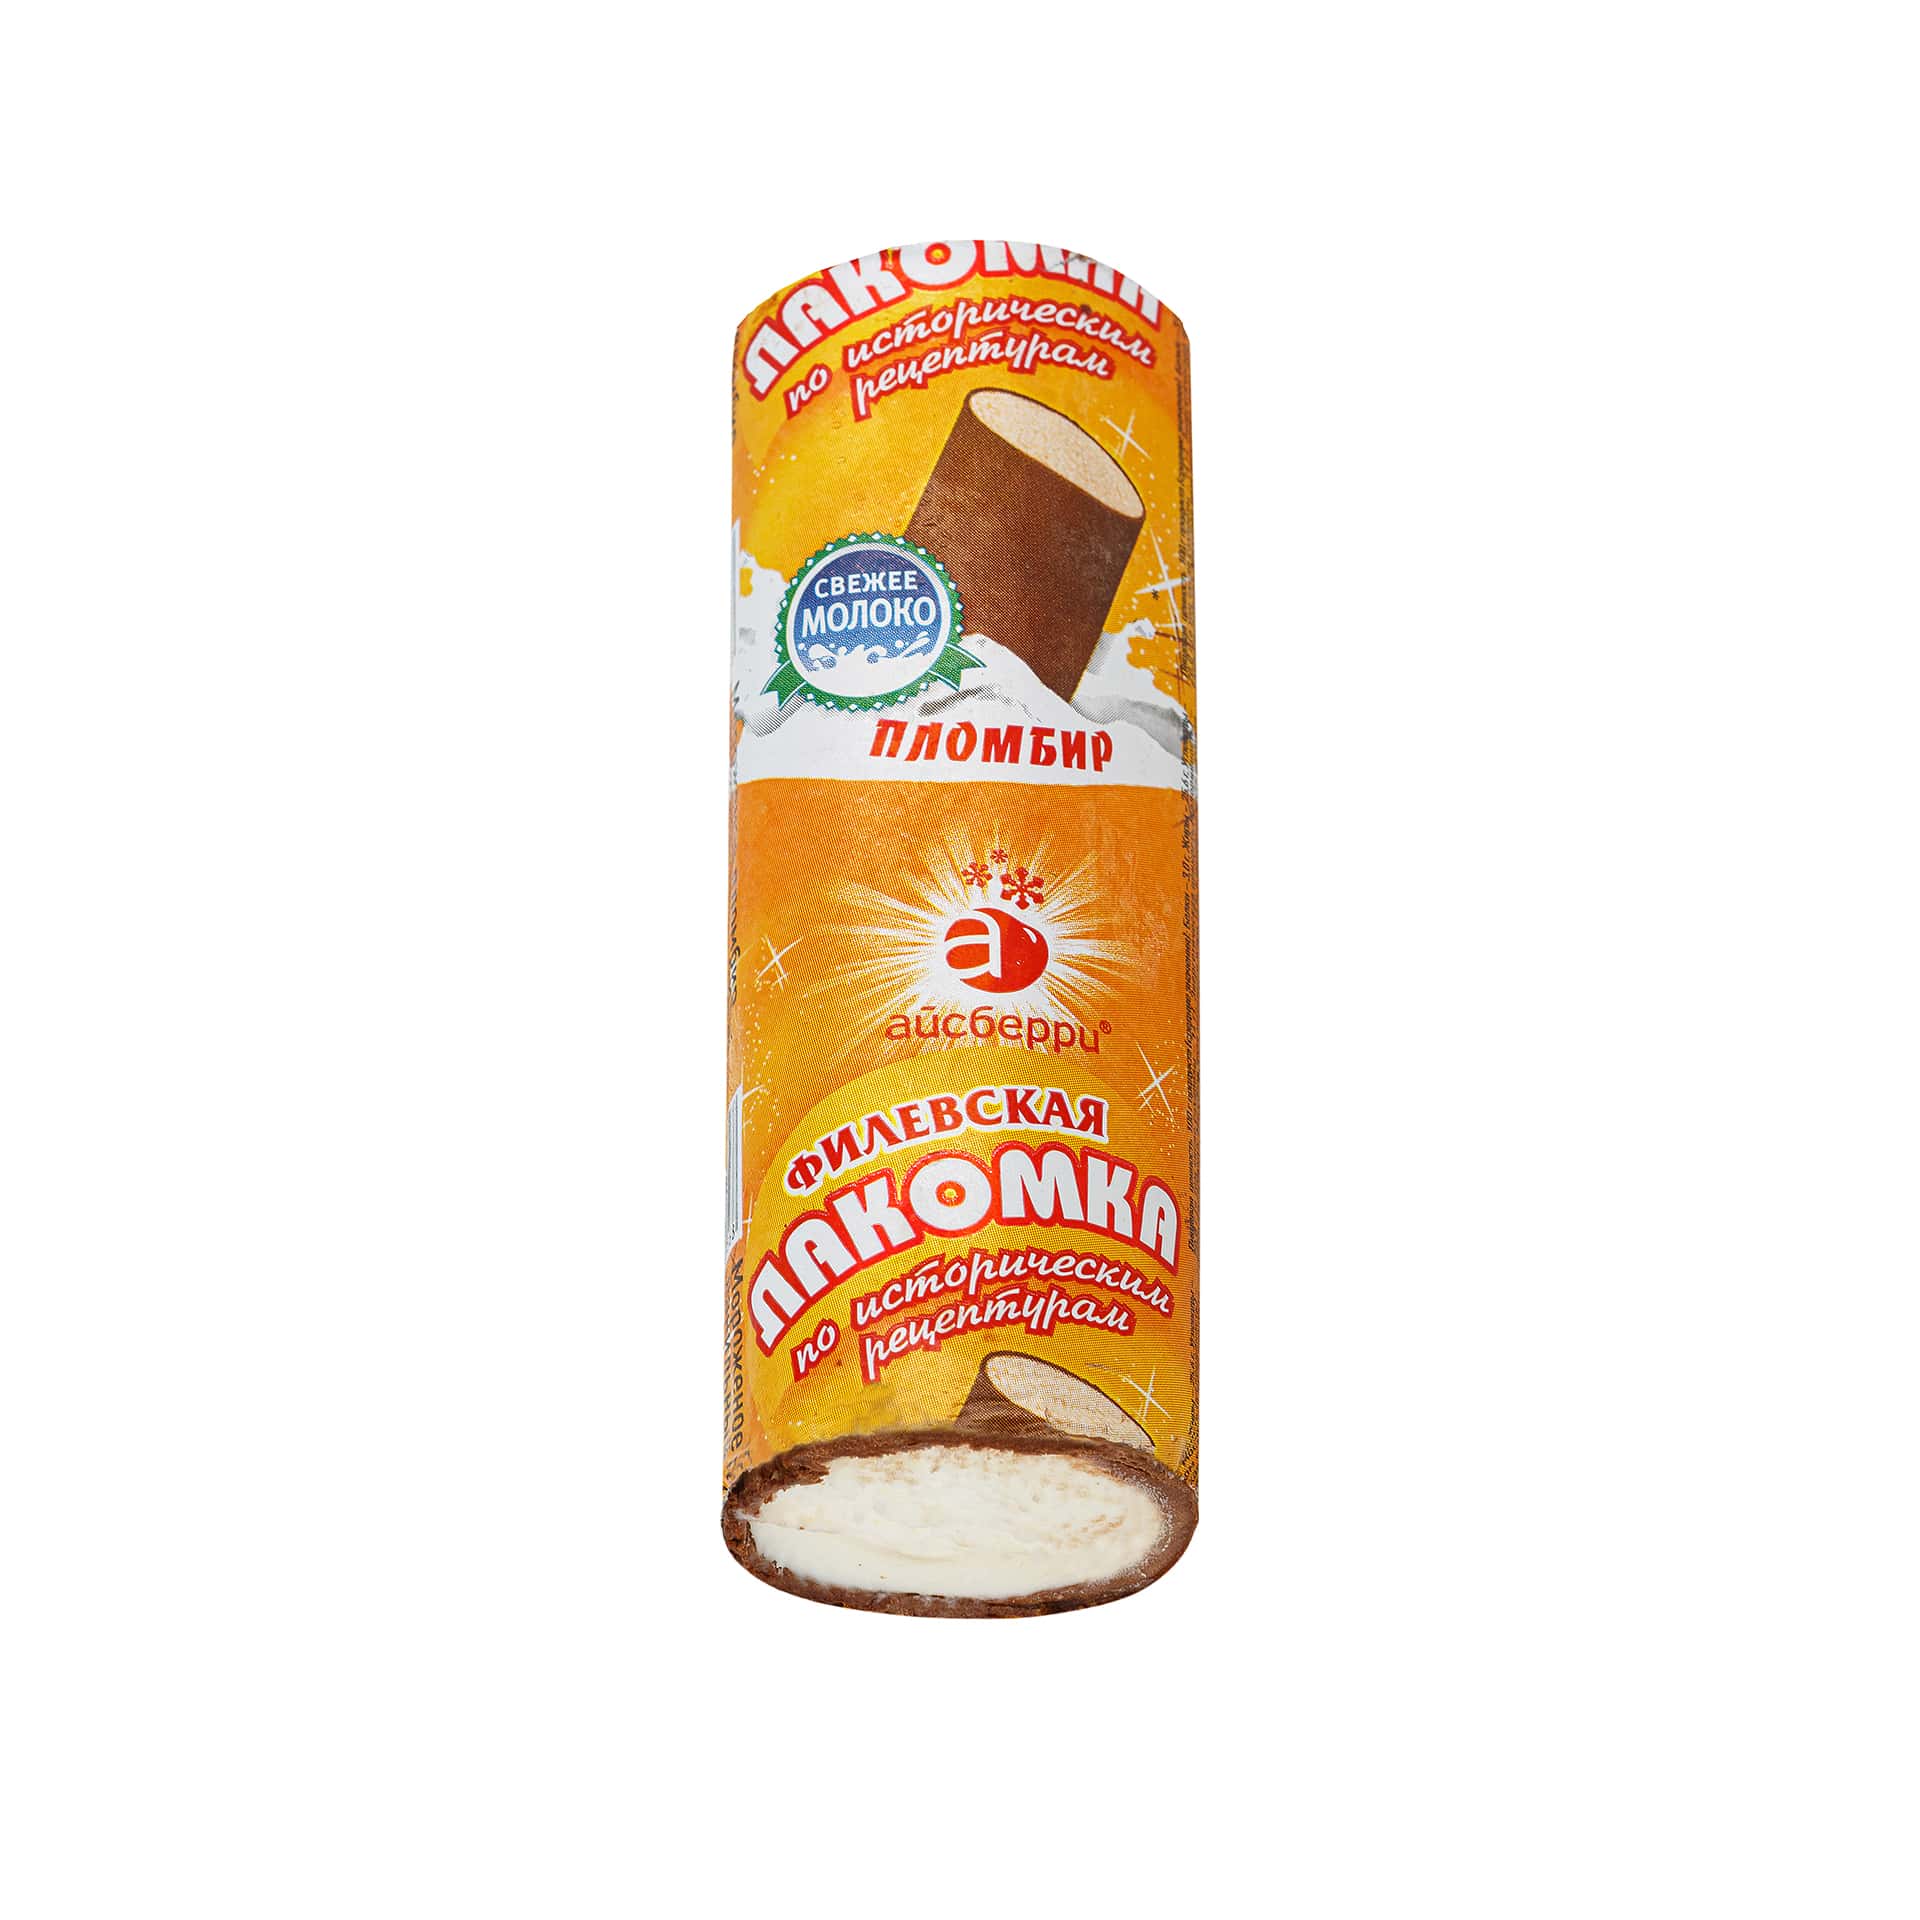 Мороженое пломбир ванильный во взбитой шоколадной глазури Филевская лакомка 90 г 7536LED, общий вид, купить оптом с доставкой по москве и московской области, недорого, низкая цена